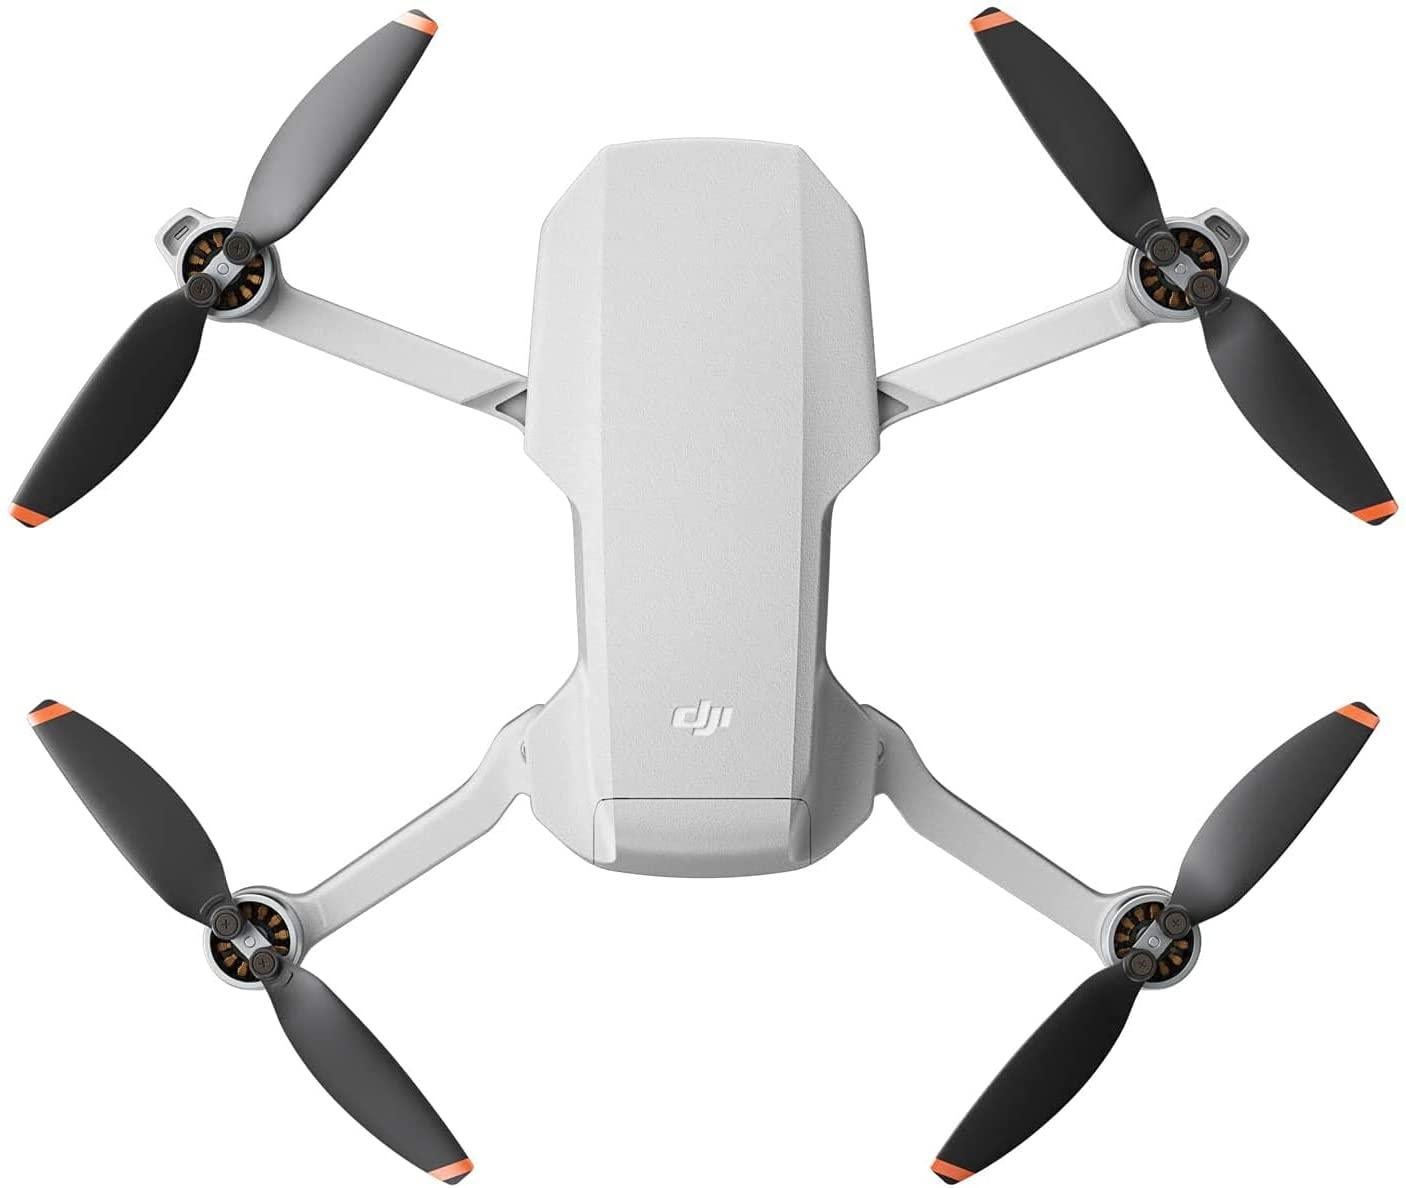 DJI Mini 2 SE Fly More Combo - Quadcopter - Wi-Fi